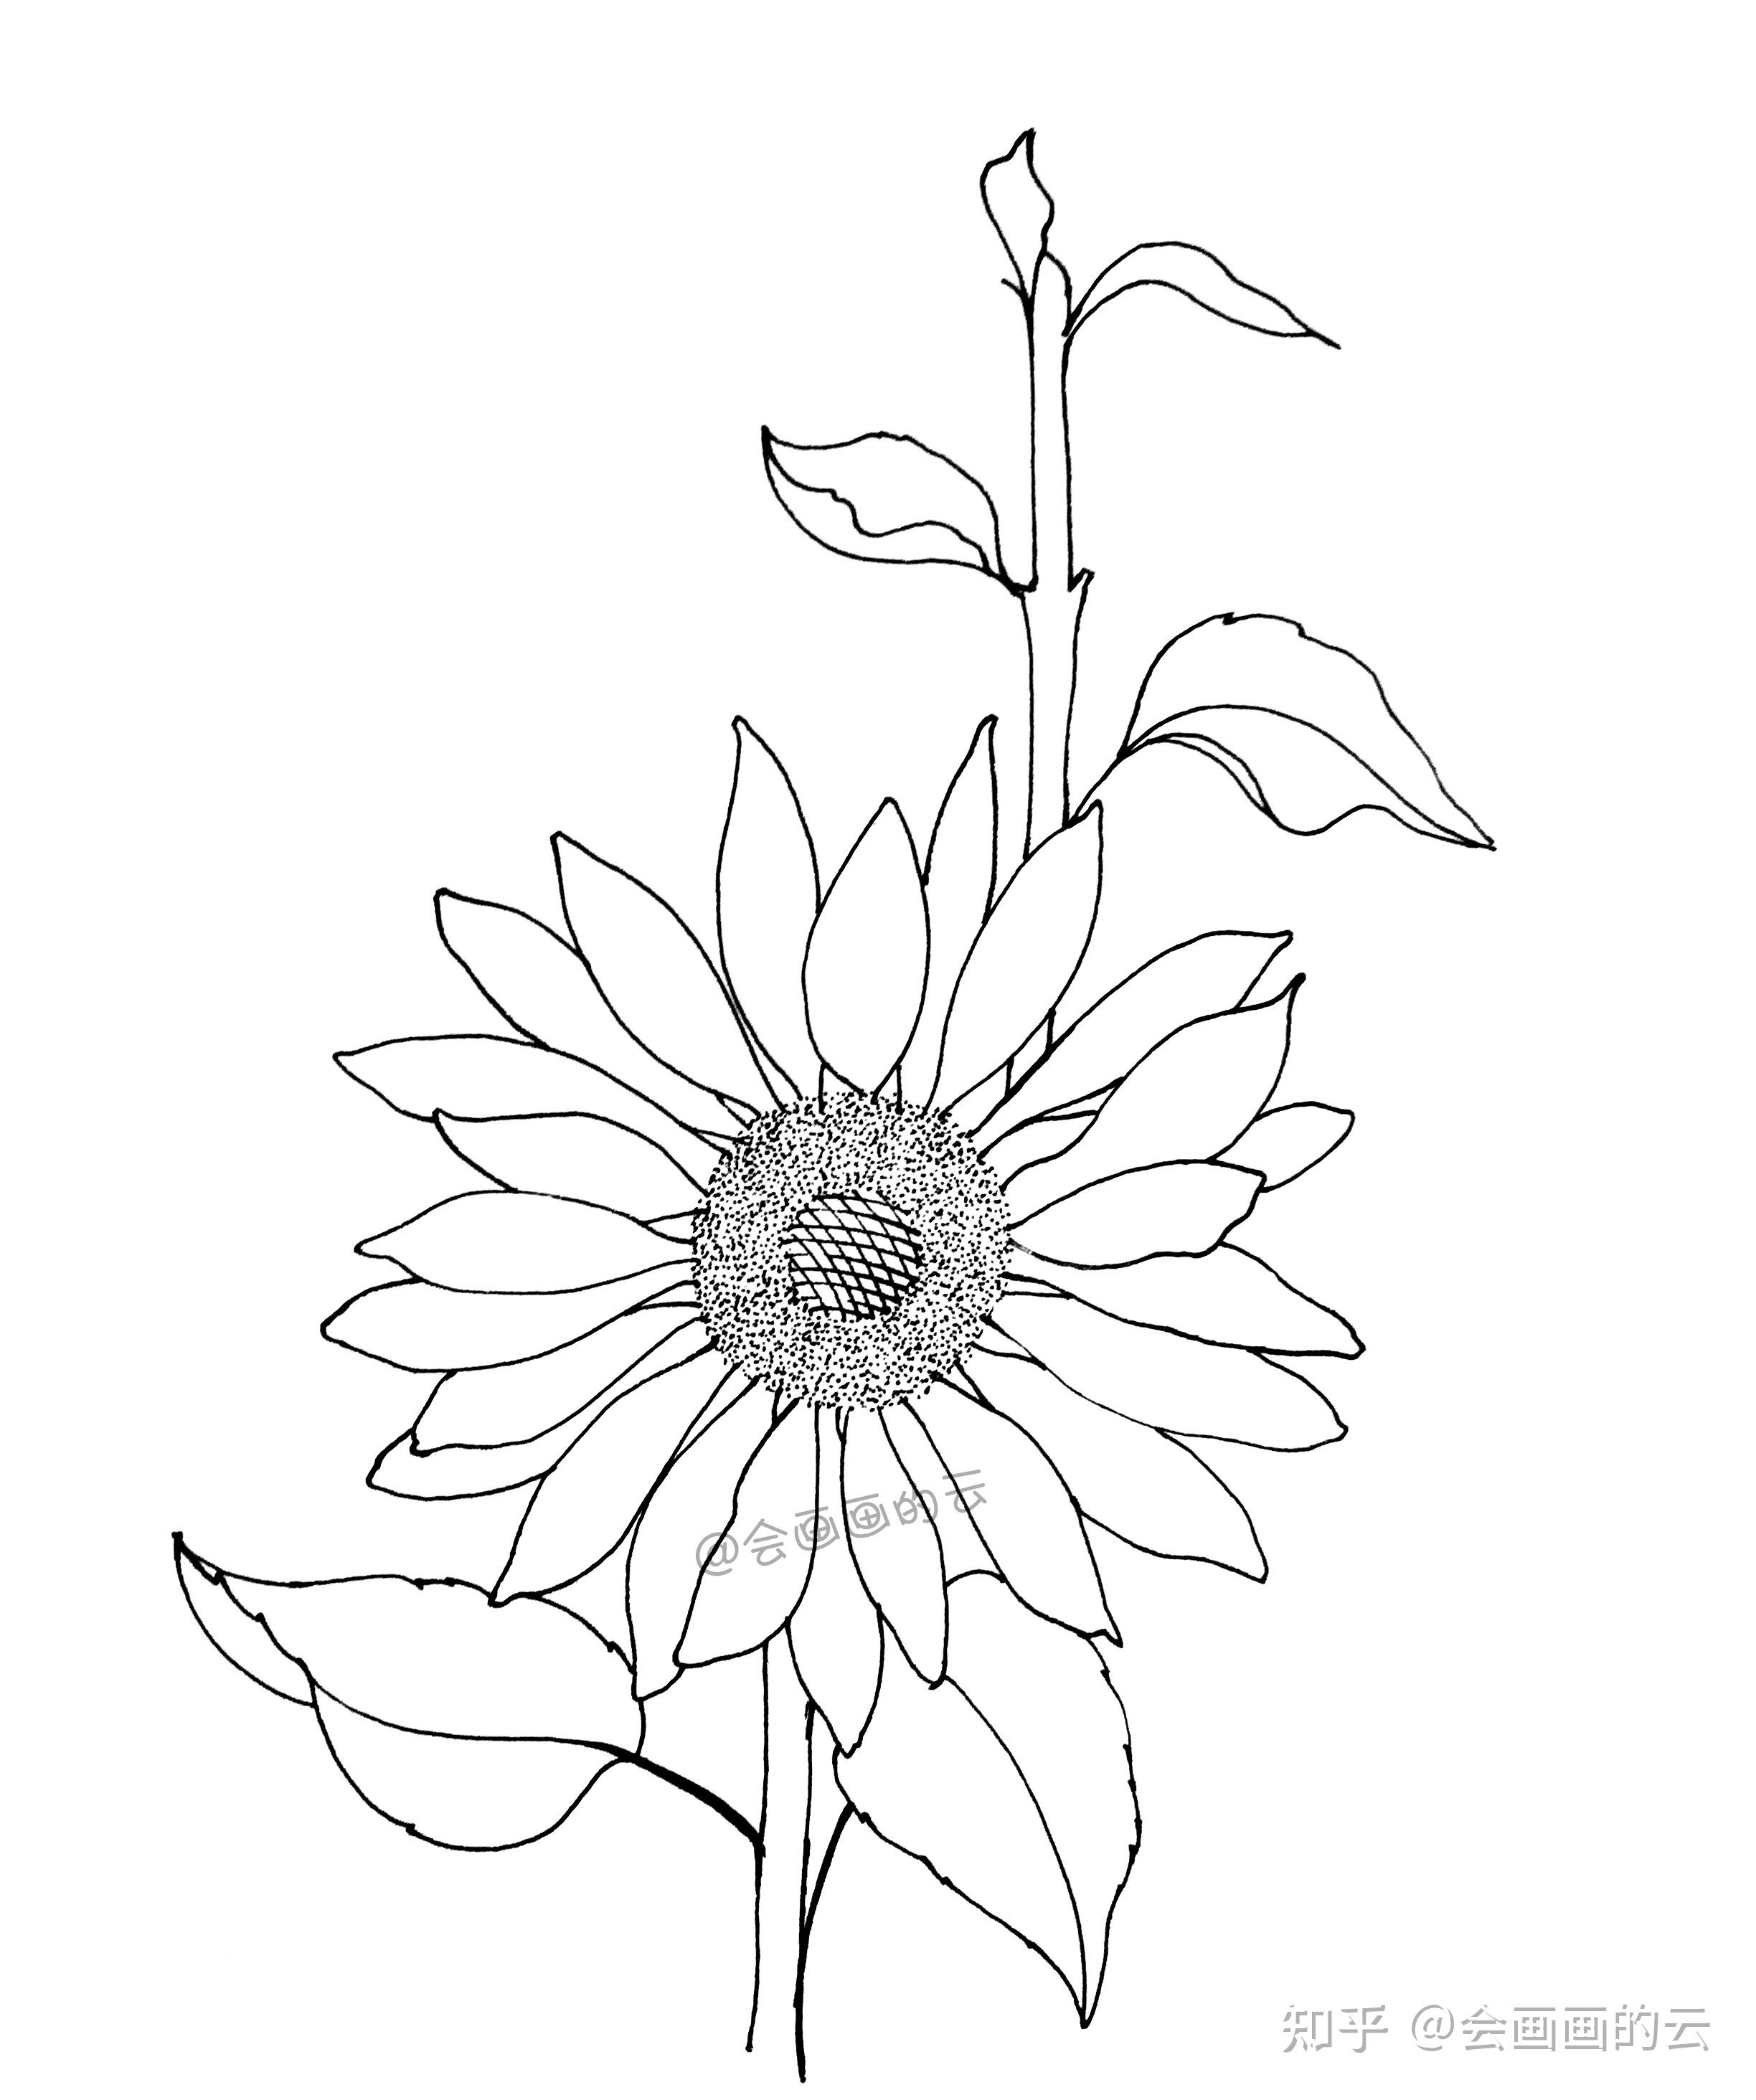 教你如何用一支笔画线描花卉